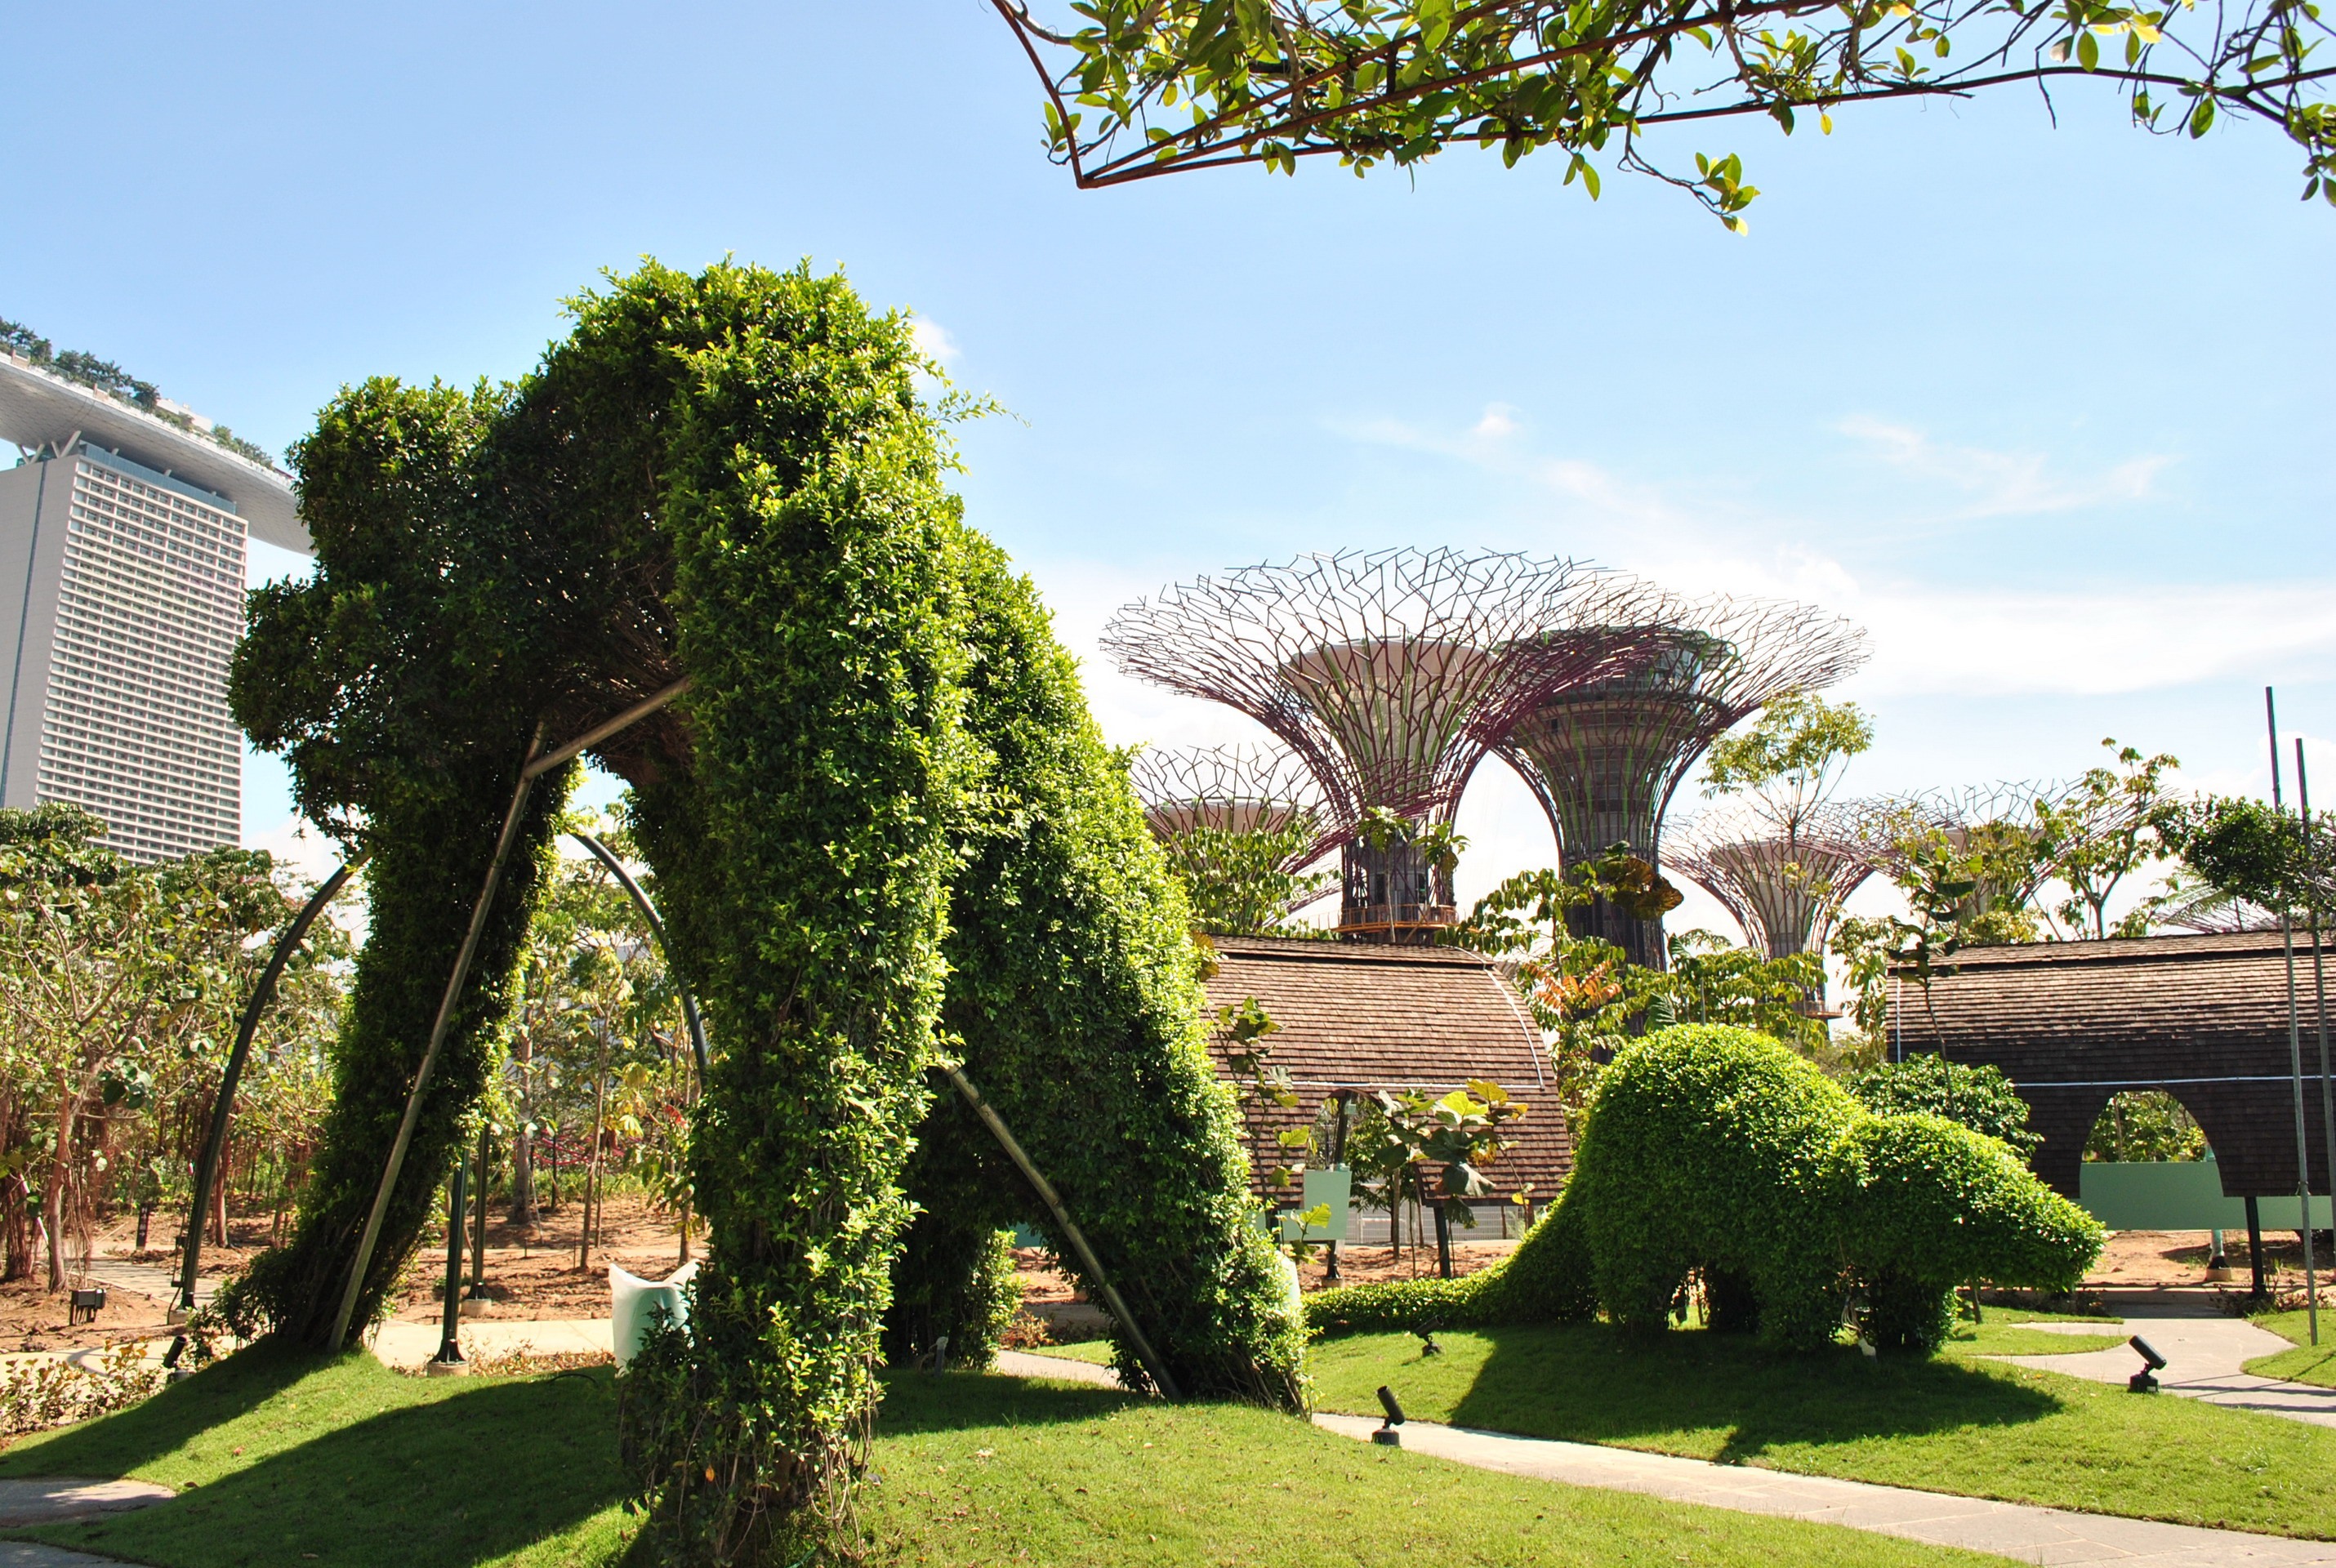 Какой парк с интересным названием благоустроили. Роща супердеревьев Сингапур. Сингапур Ботанический сад. Гарденс Бэй Бэй Сингапур. Сингапур парк сады у залива.